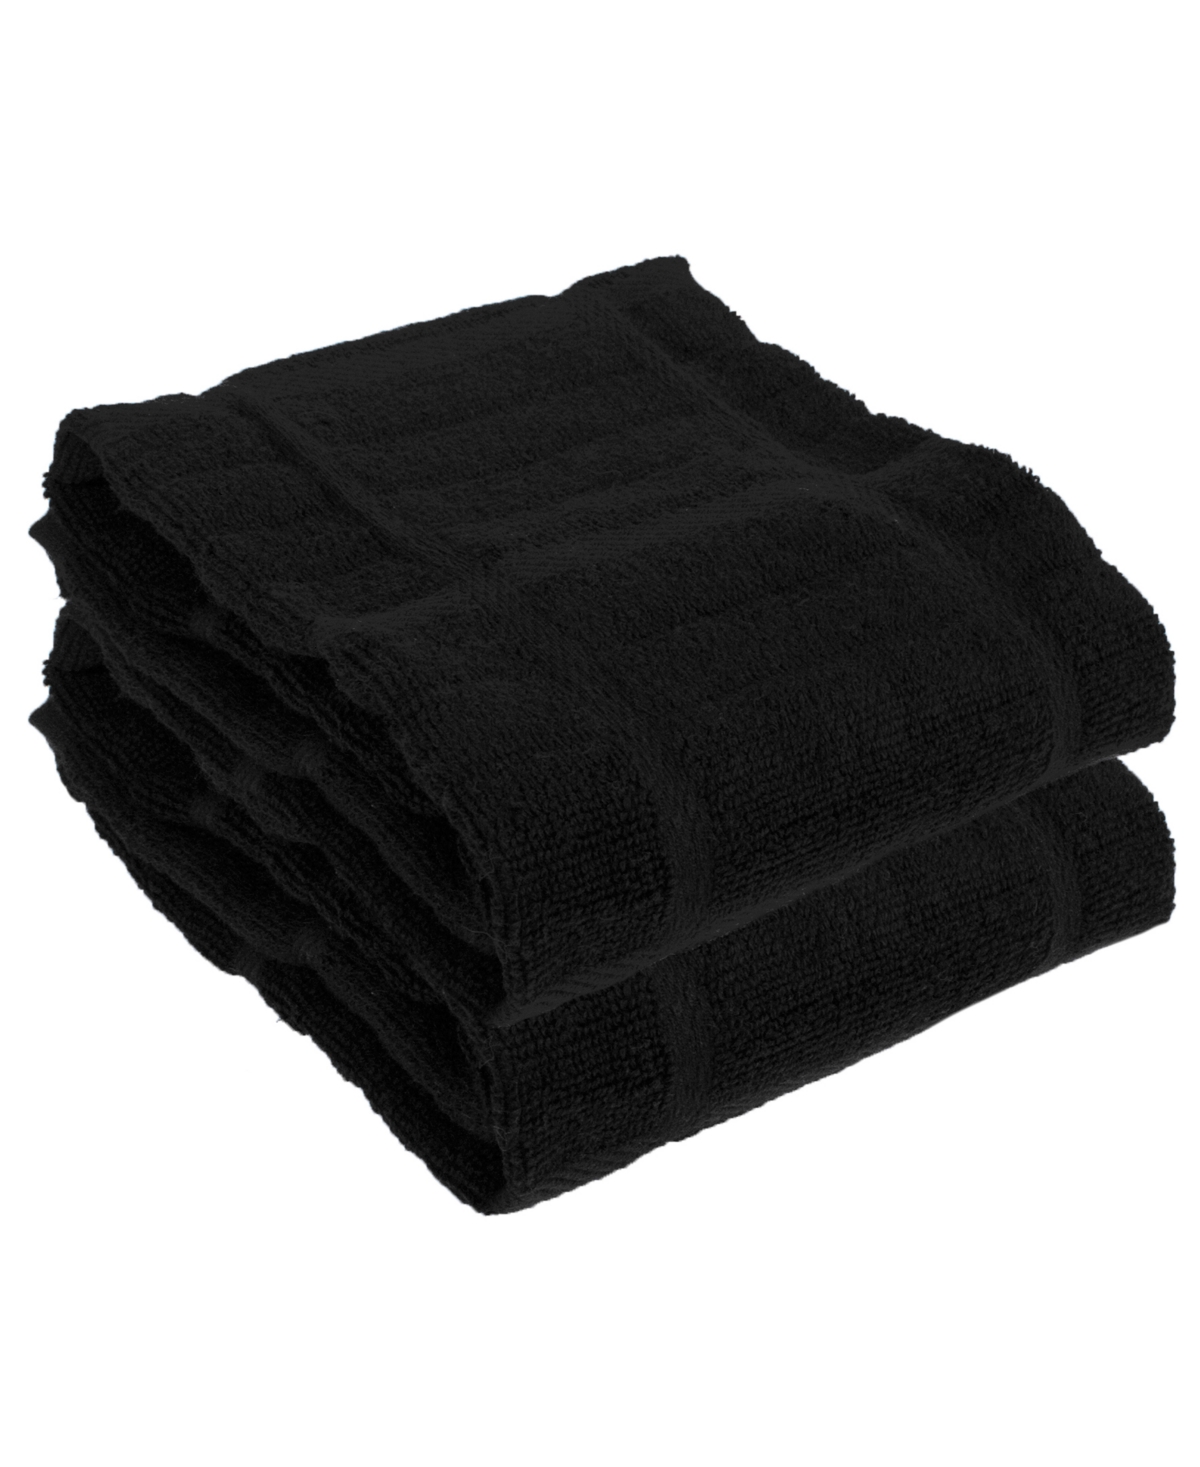 Solid Kitchen Towel, Set of 2 - Cappucino